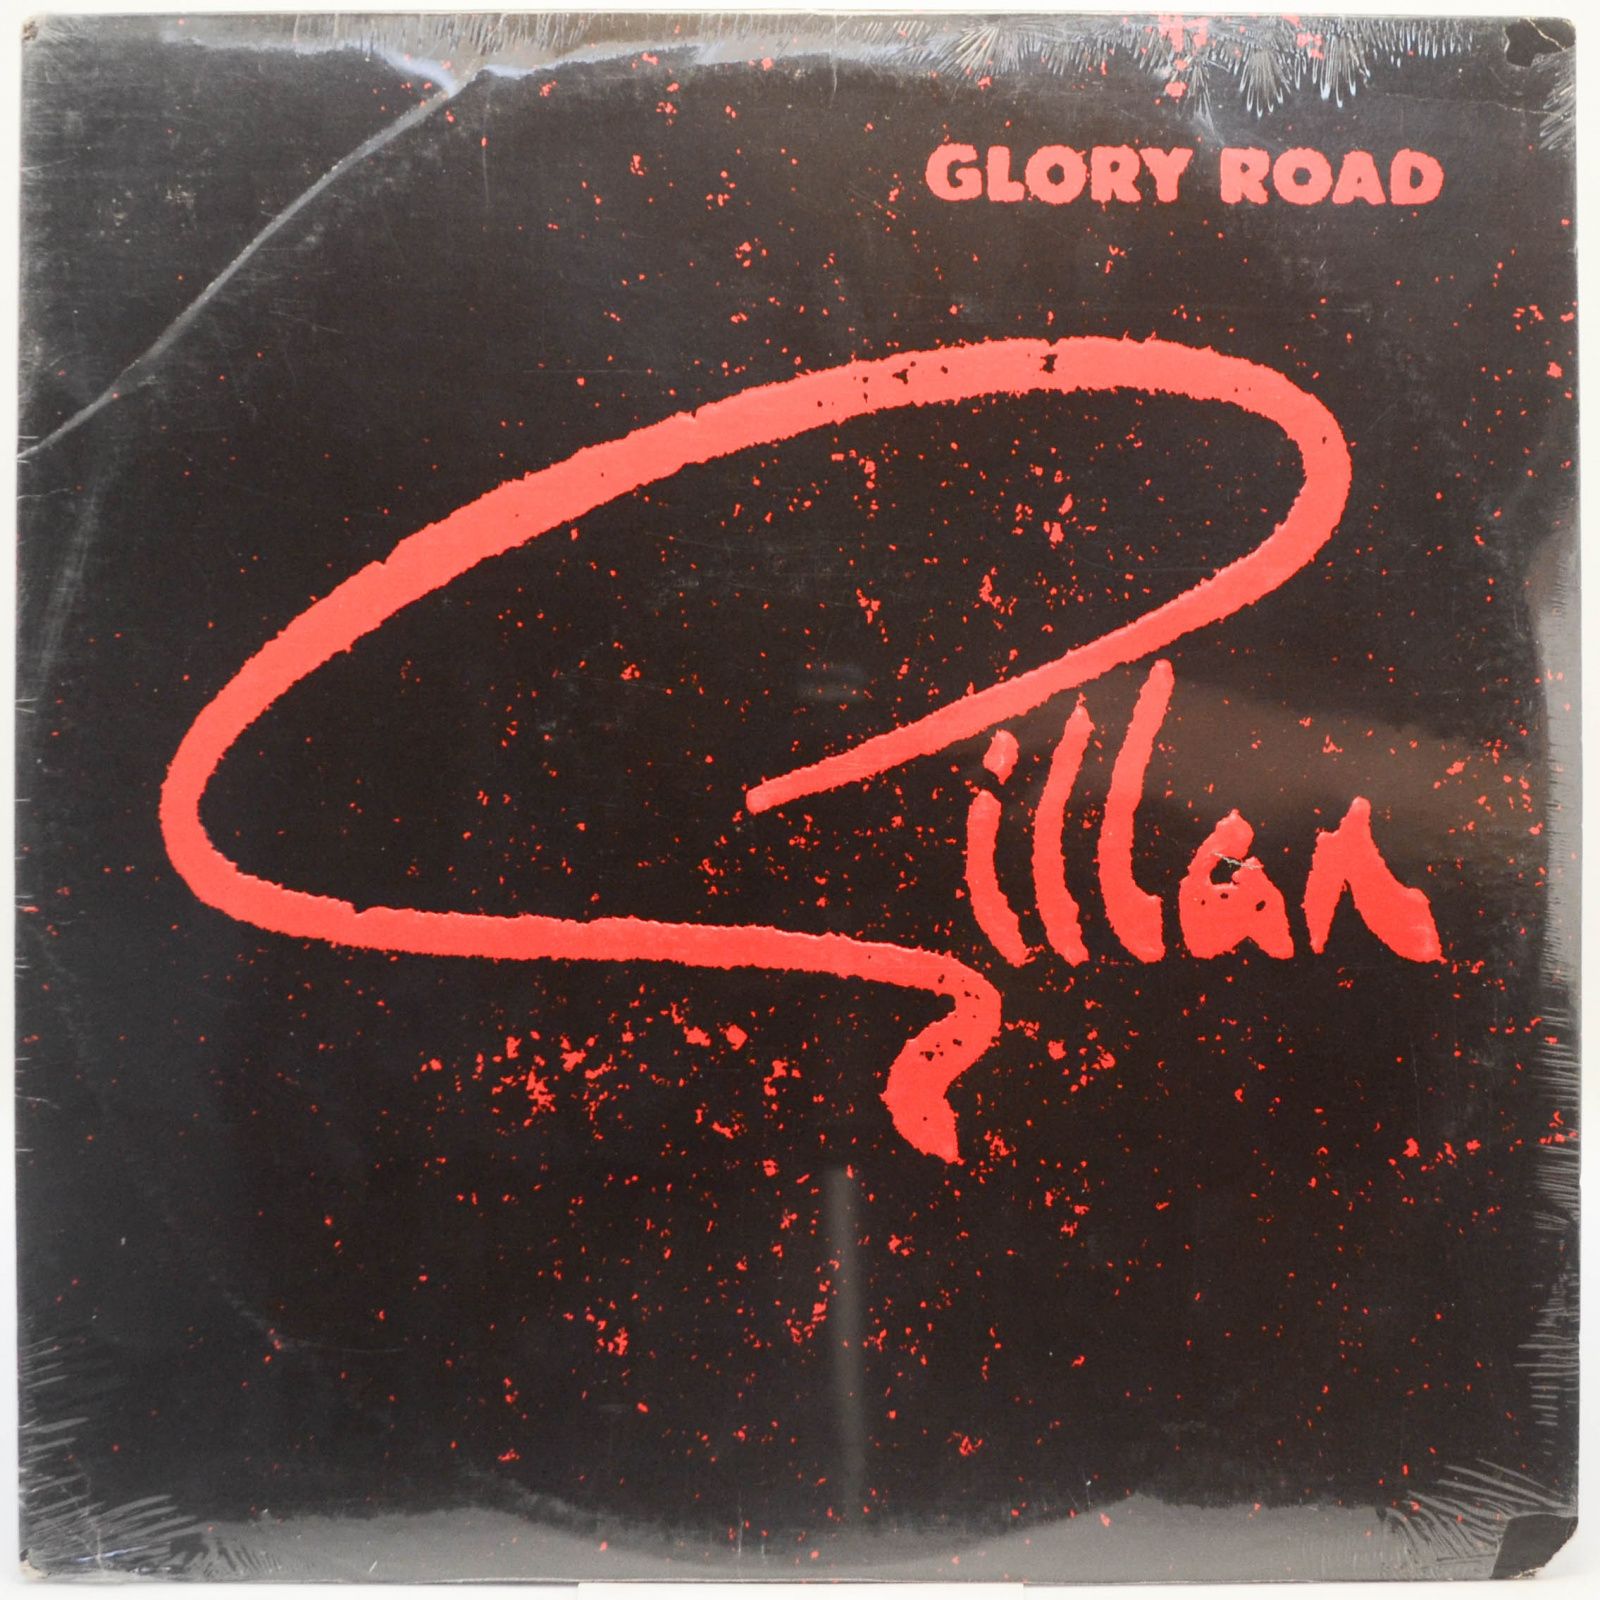 Gillan — Glory Road (USA), 1980